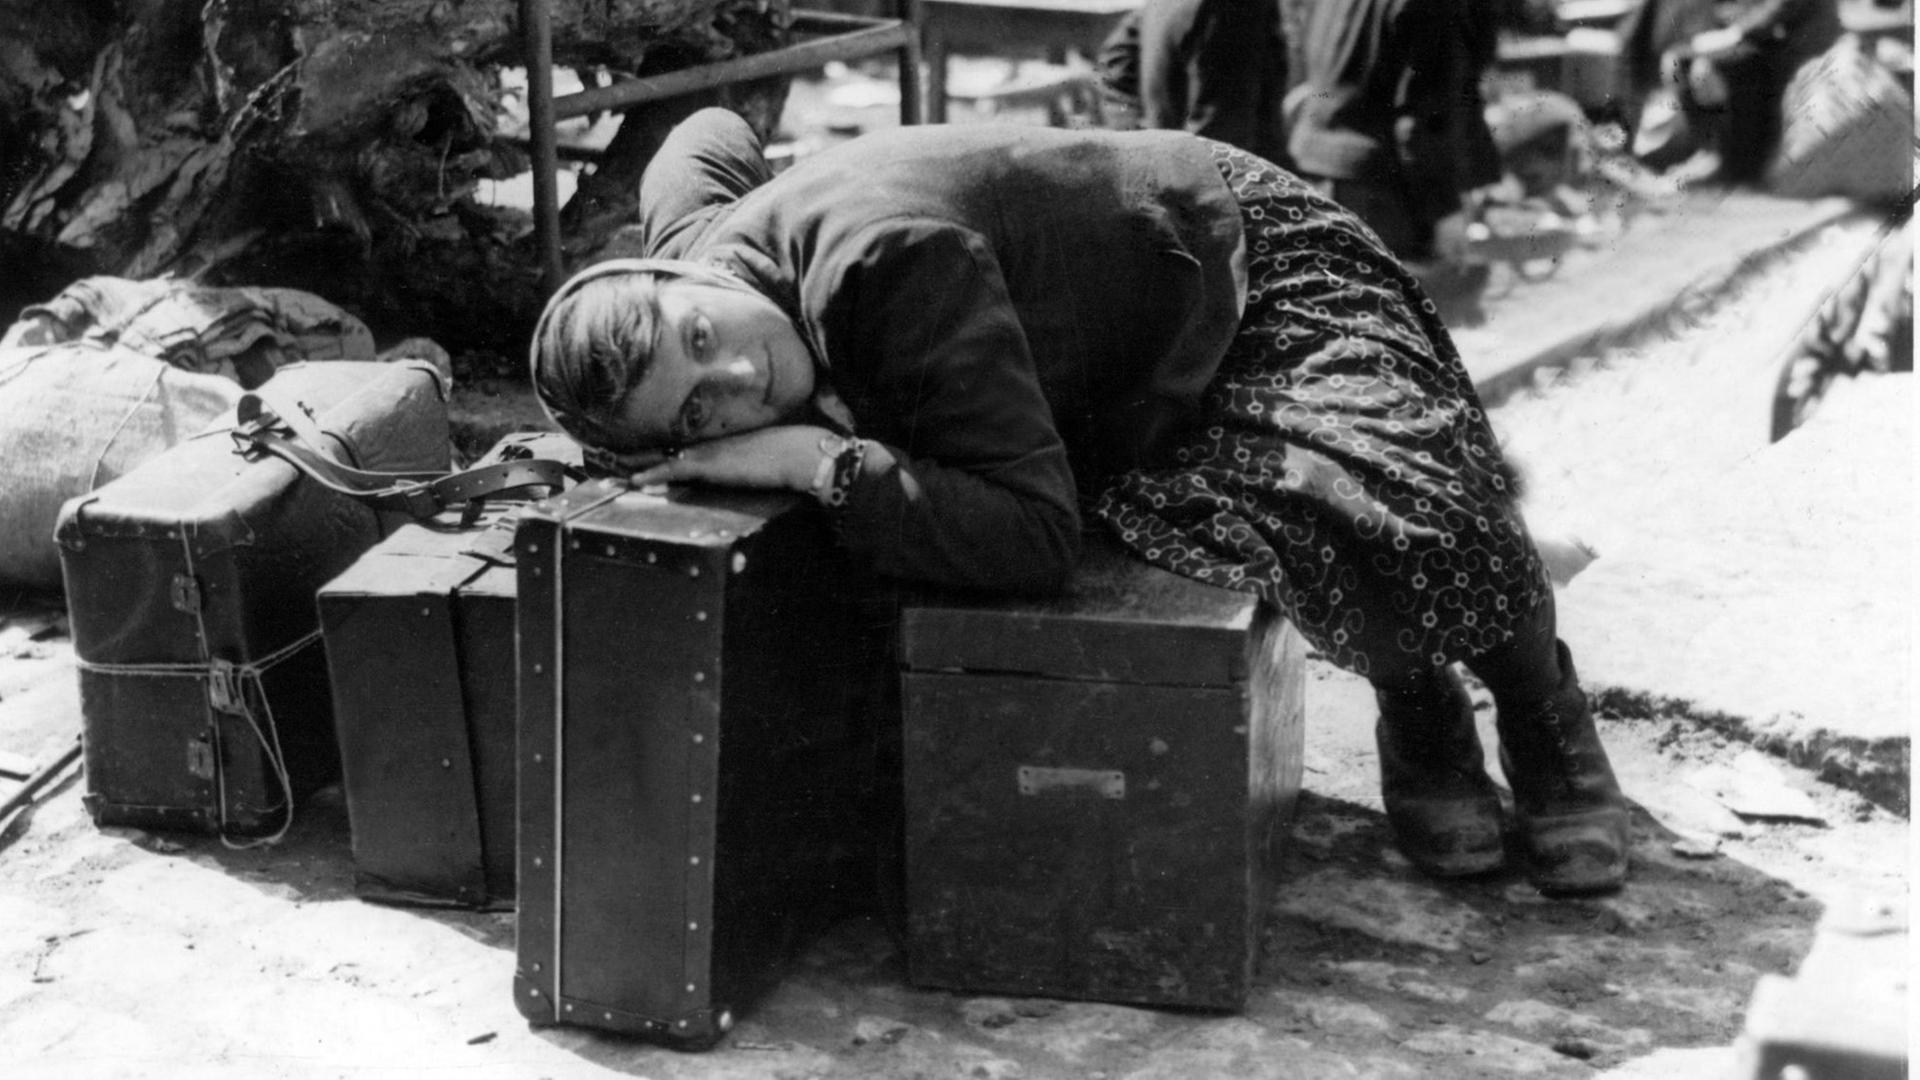 Eine erschöpfte russische Zwangsarbeiterin ruht sich im April 1945 in der Sammelstelle für Zwangsverschleppte in Würzburg auf Gepäckstücken aus. Sie war von Einheiten der 7. amerikanischen Armee befreit worden und wartet nun auf ihre Repatriierung